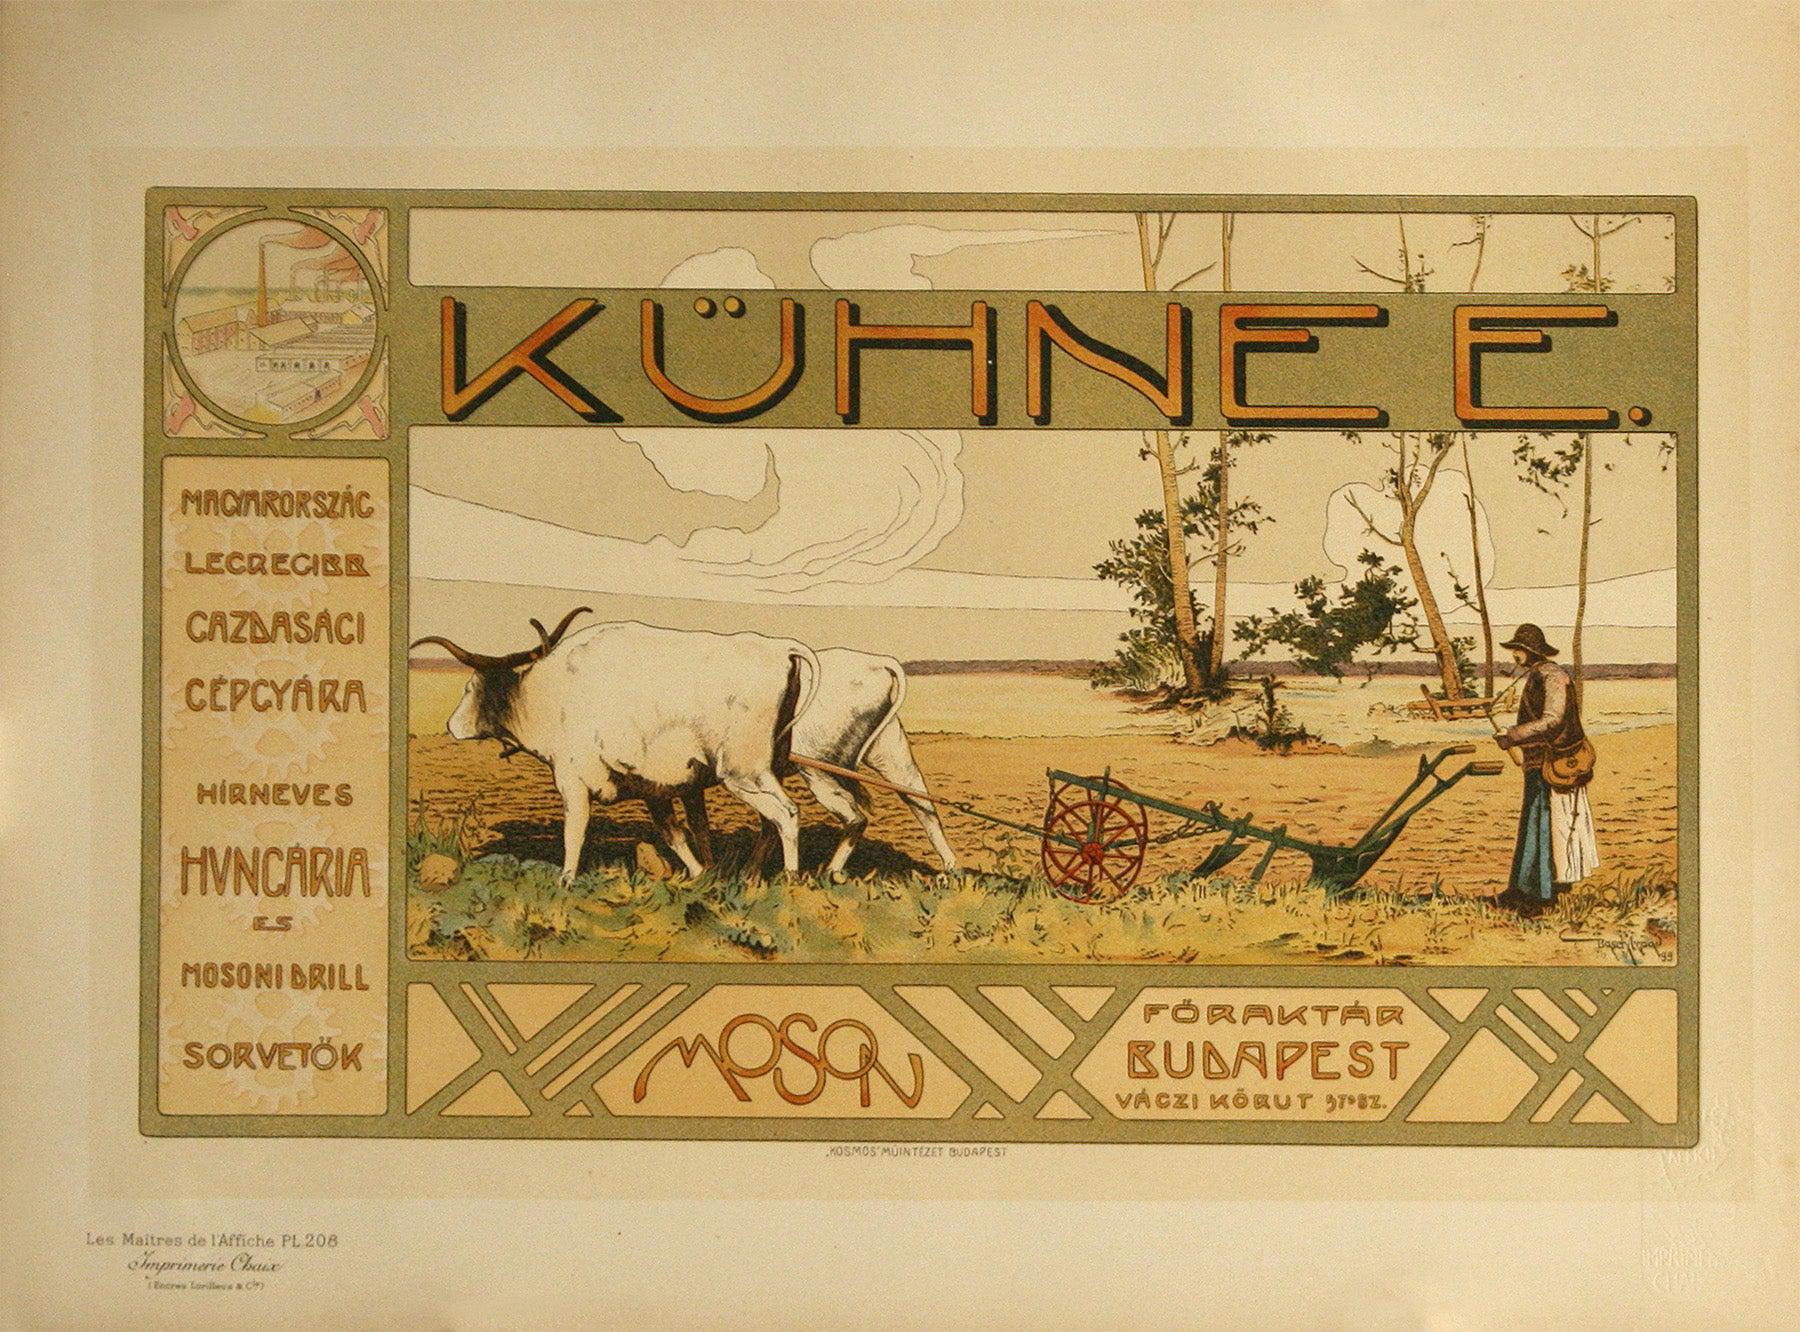 Original Vintage Maitre de l'Affiche Pl 208 Kuhnee Farm by Basch 1900 Hungary